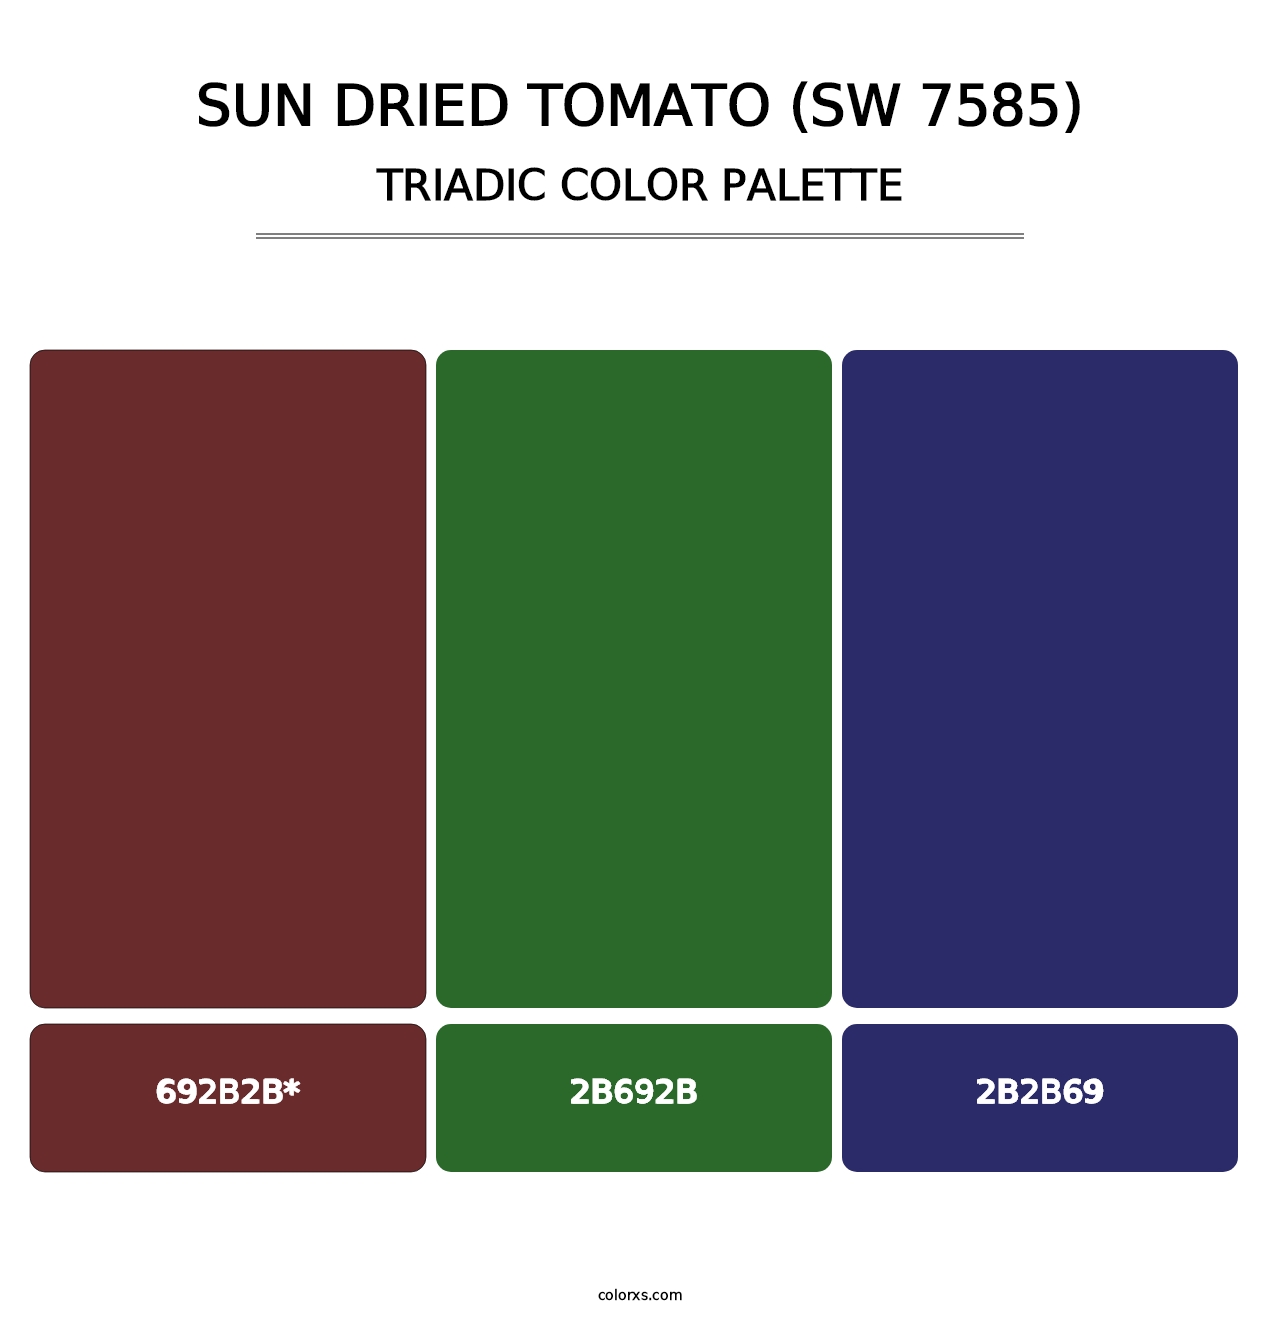 Sun Dried Tomato (SW 7585) - Triadic Color Palette